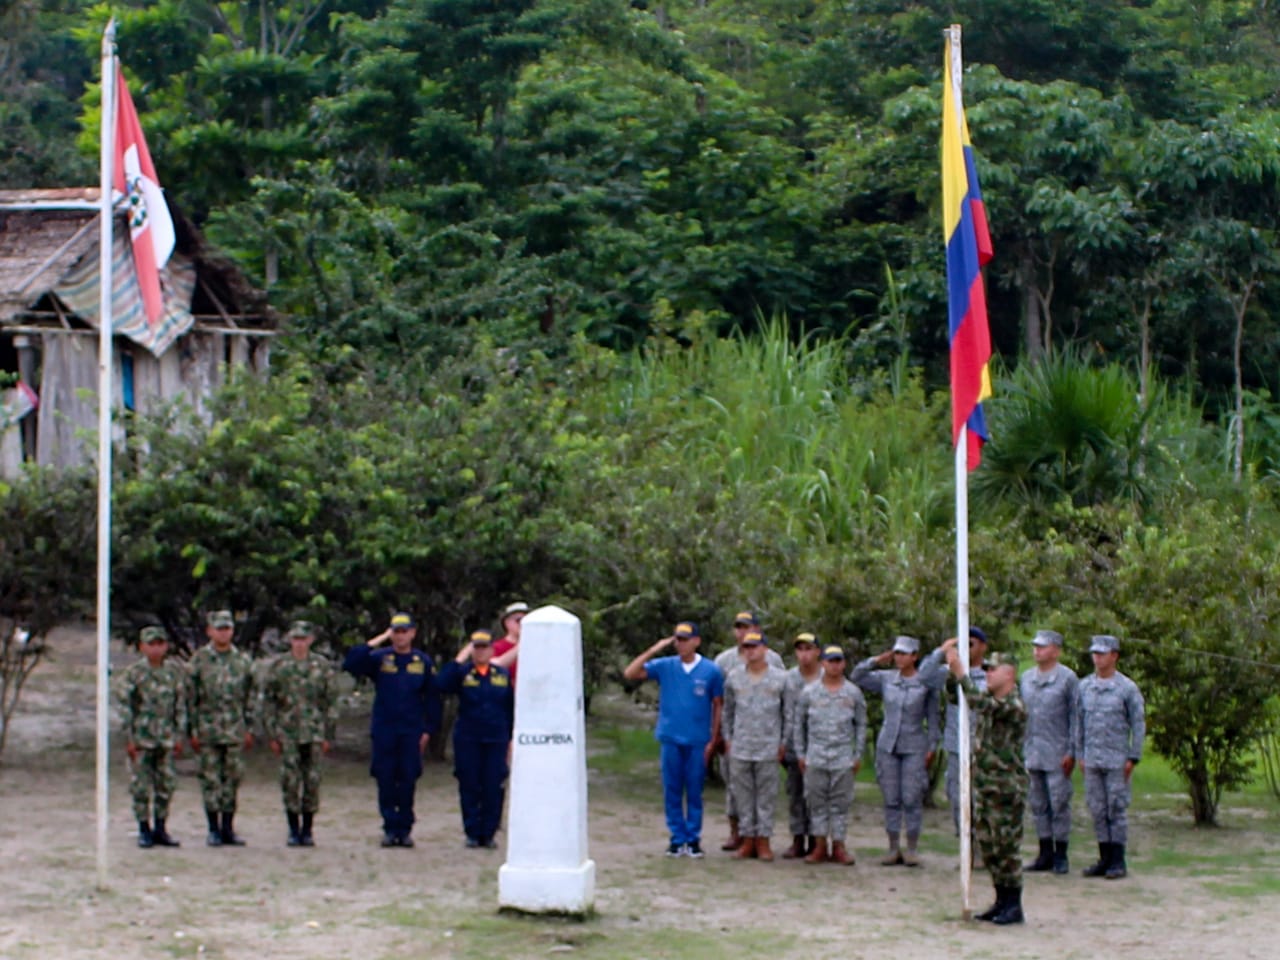 Fuerzas Militares de Colombia izan el Pabellón Nacional en el hito fronterizo con Perú